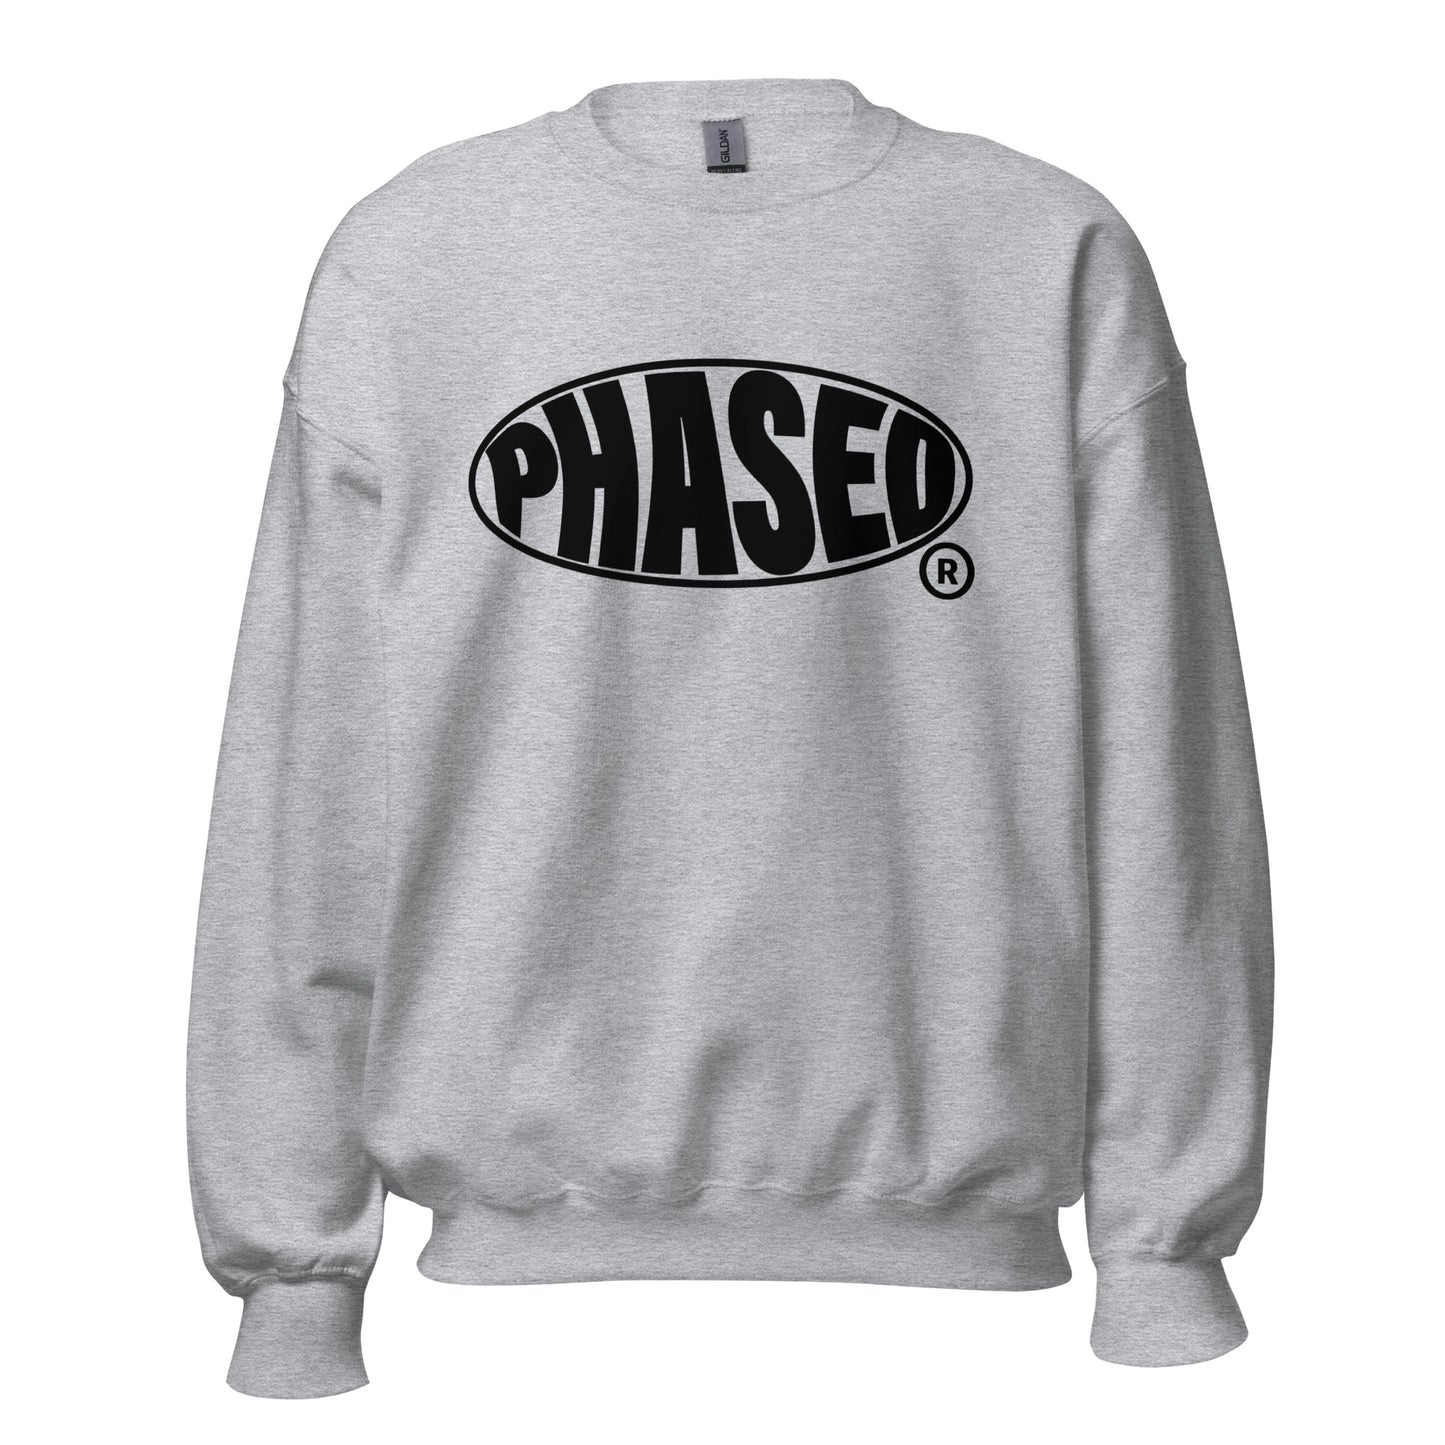 Warped Phased Sweatshirt